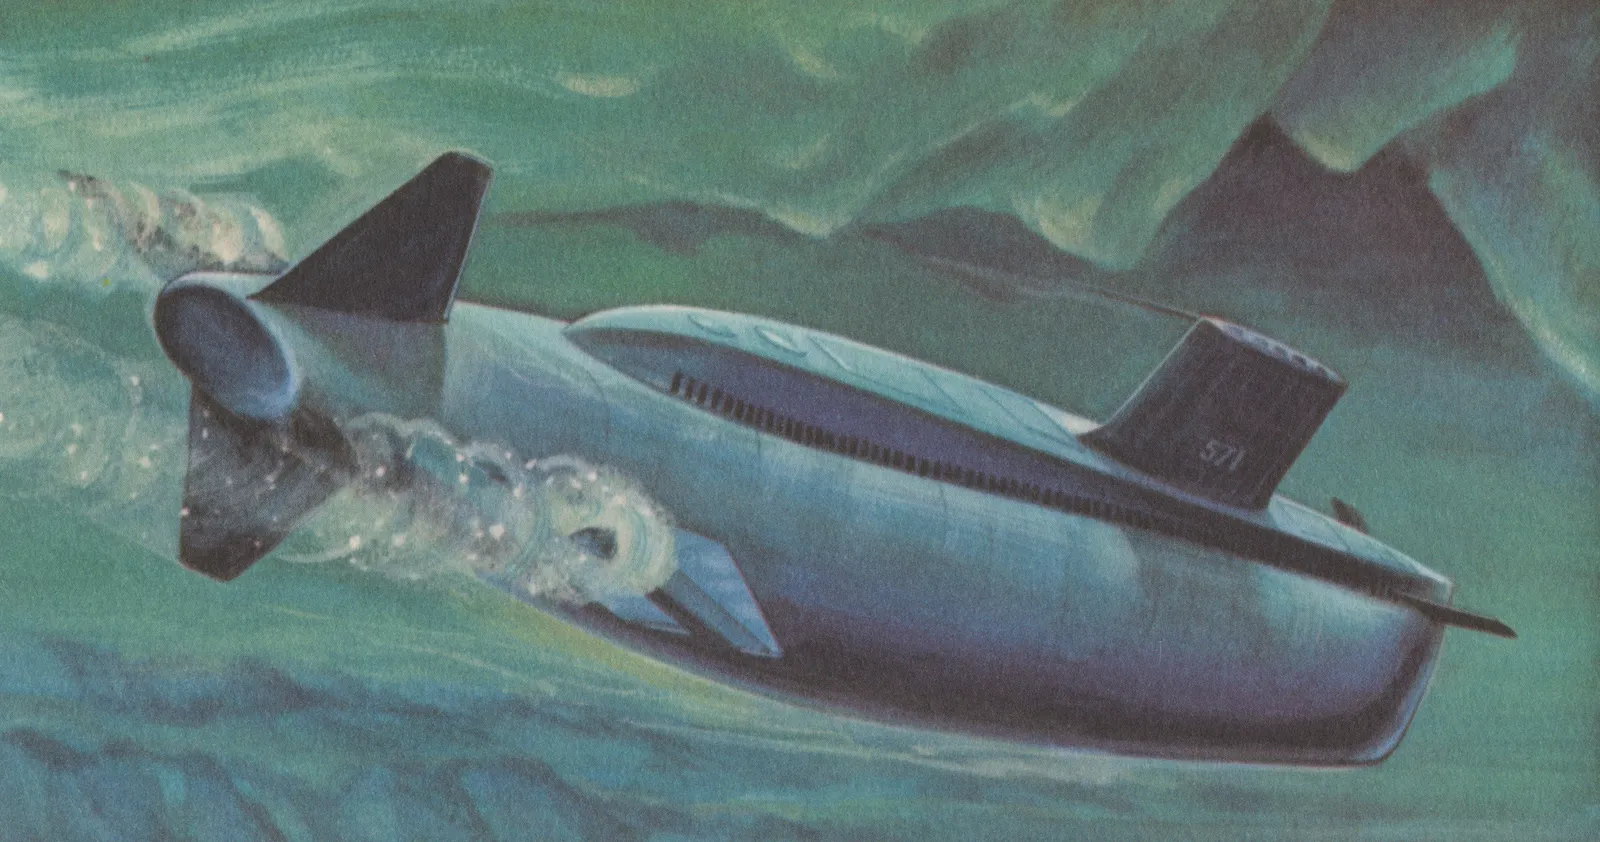 nautilus submarine drawing